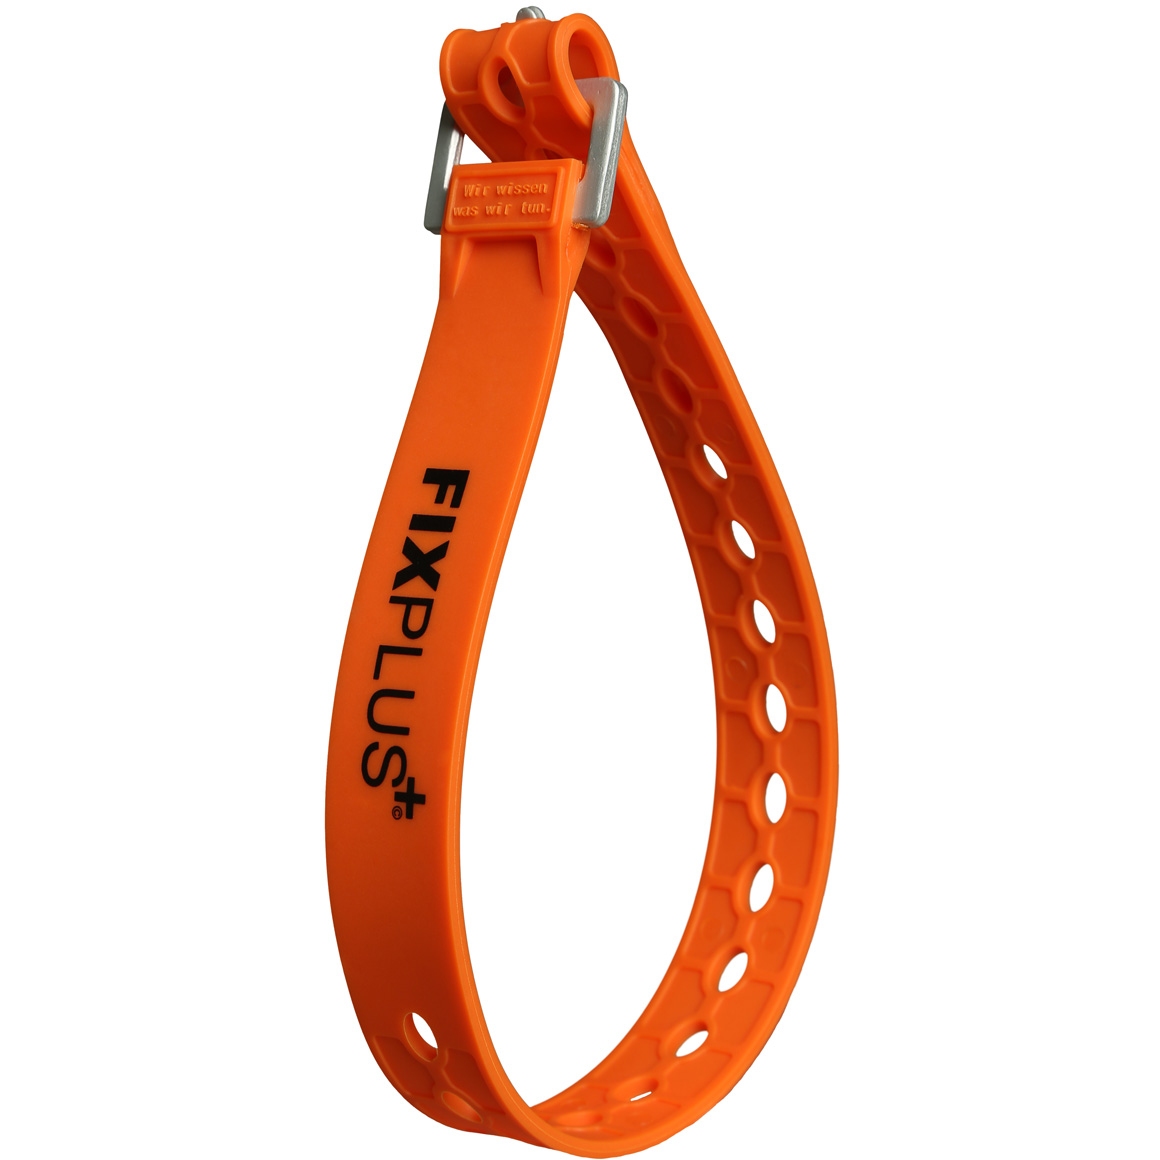 Produktbild von FixPlus Strap Gummizurrband 66cm - orange